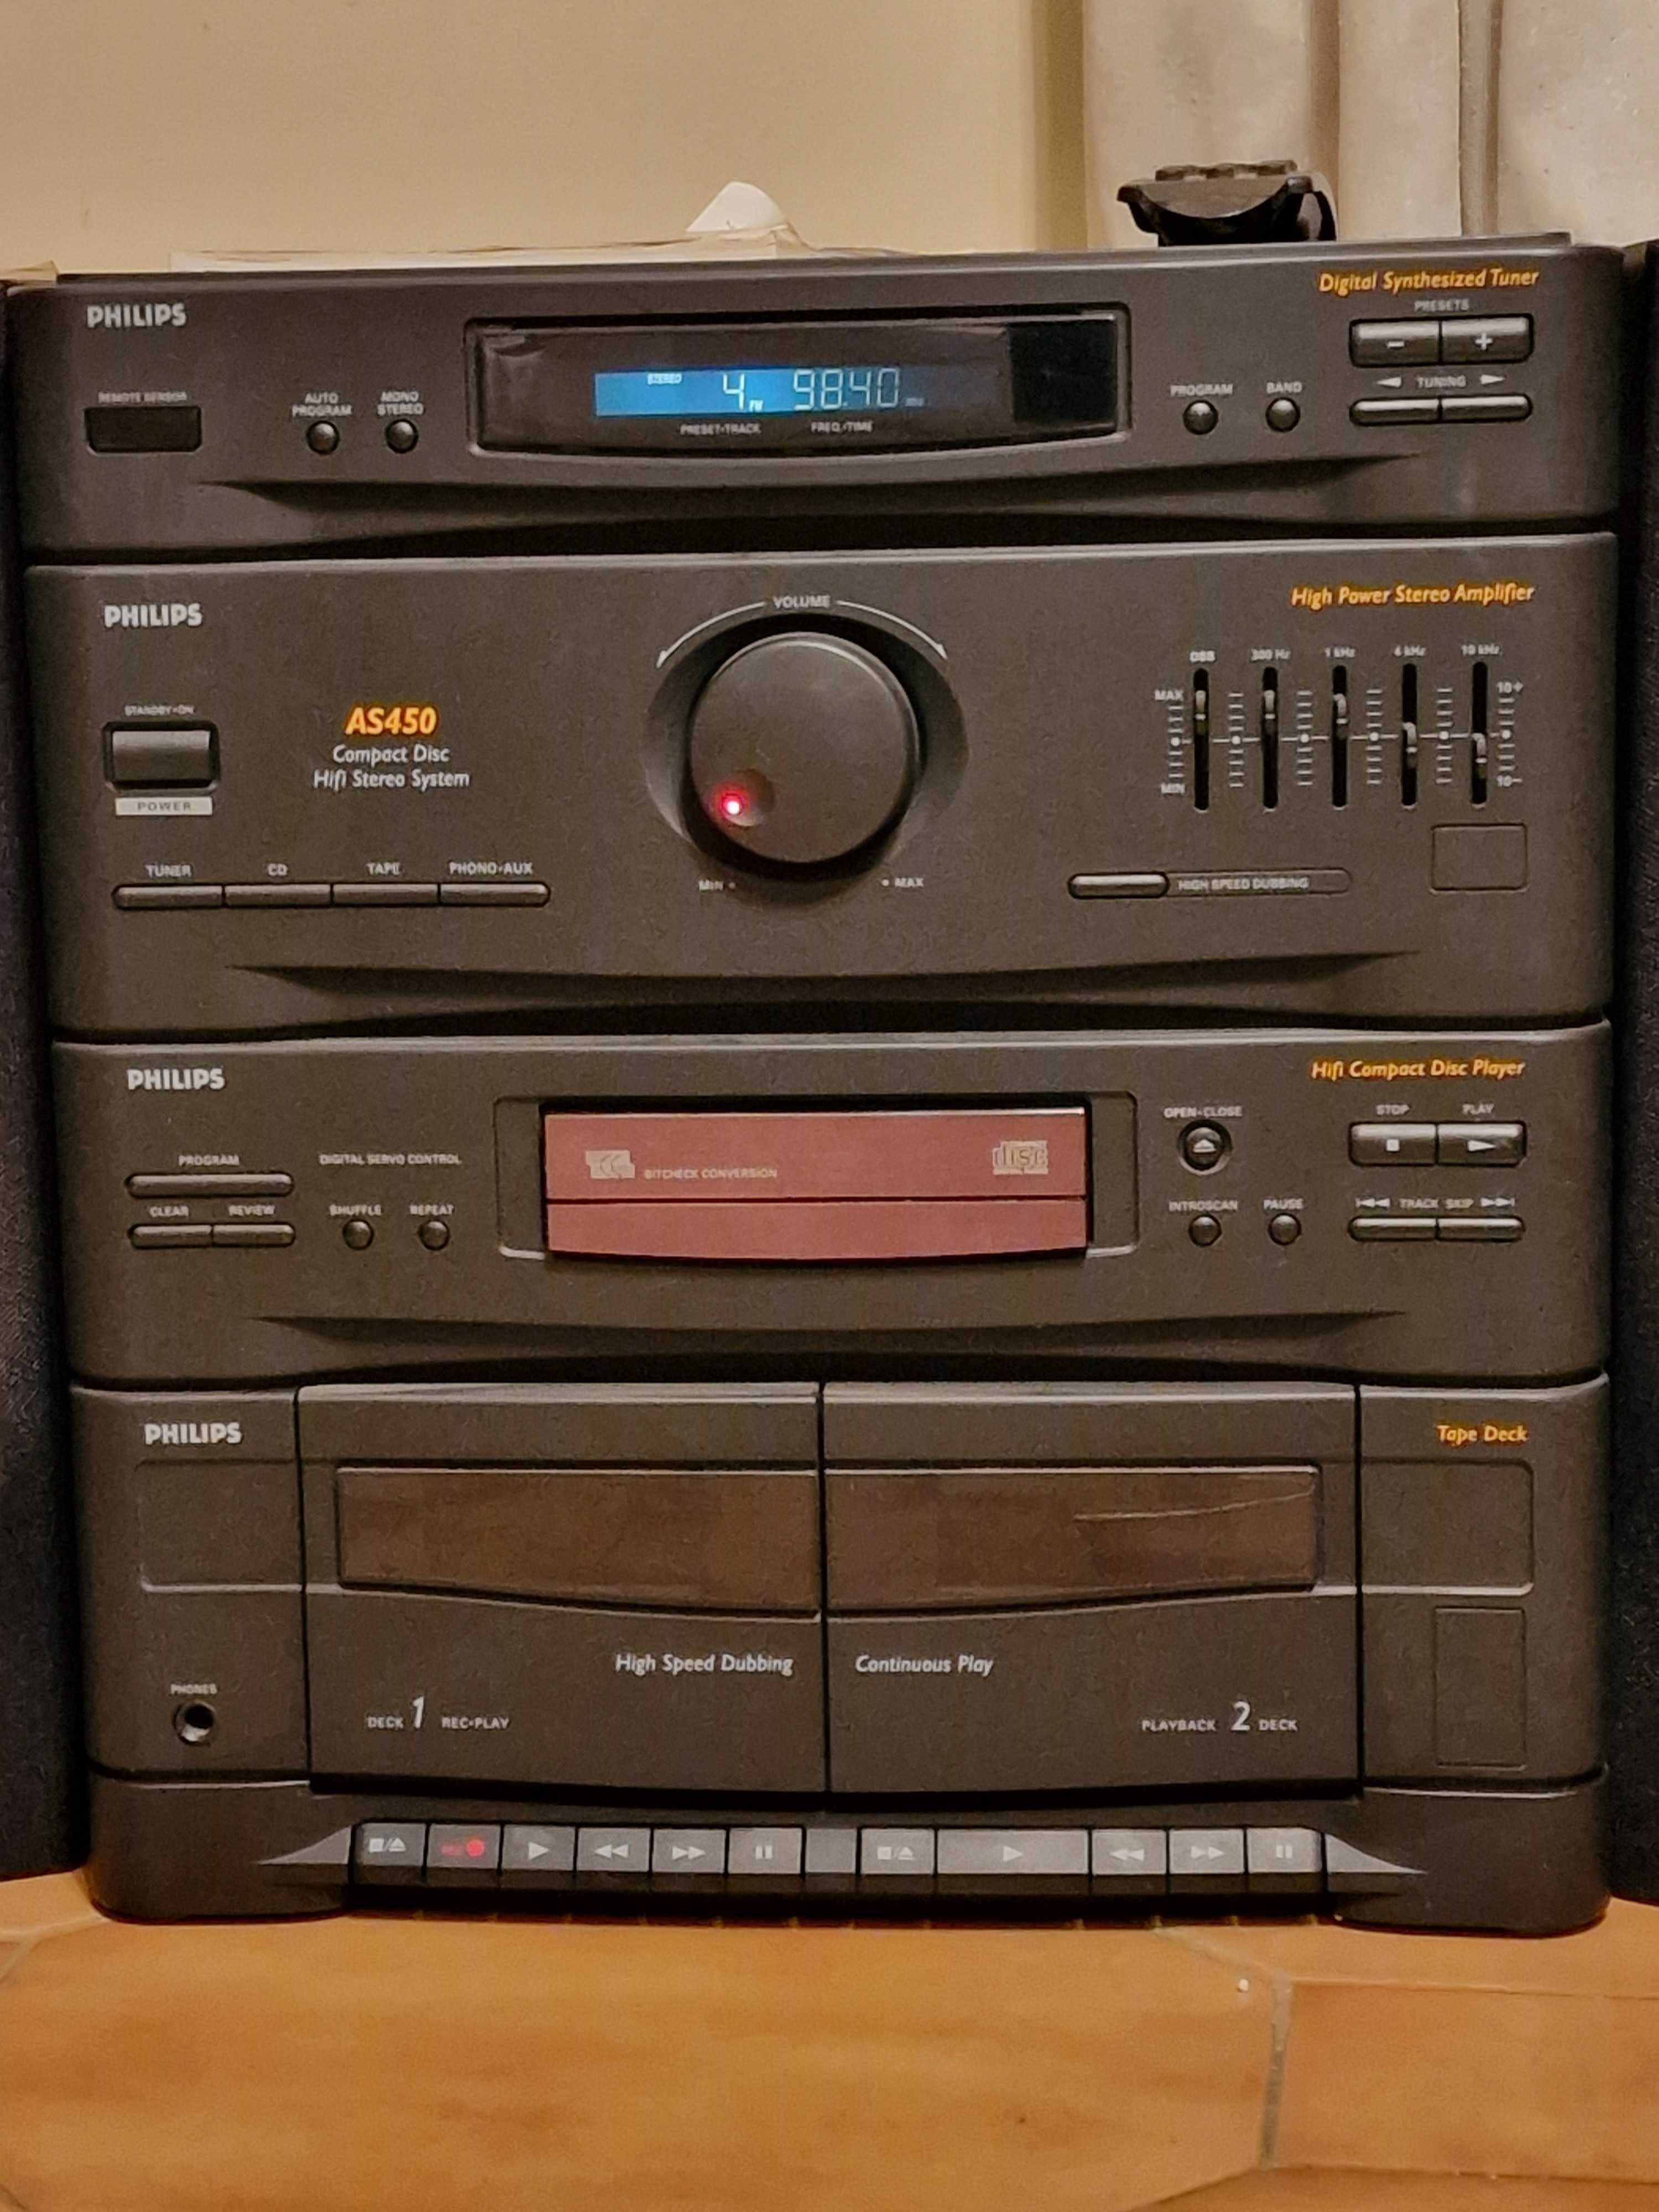 Philips AS450 - aparelhagem com pequeno defeito no leitor de CD